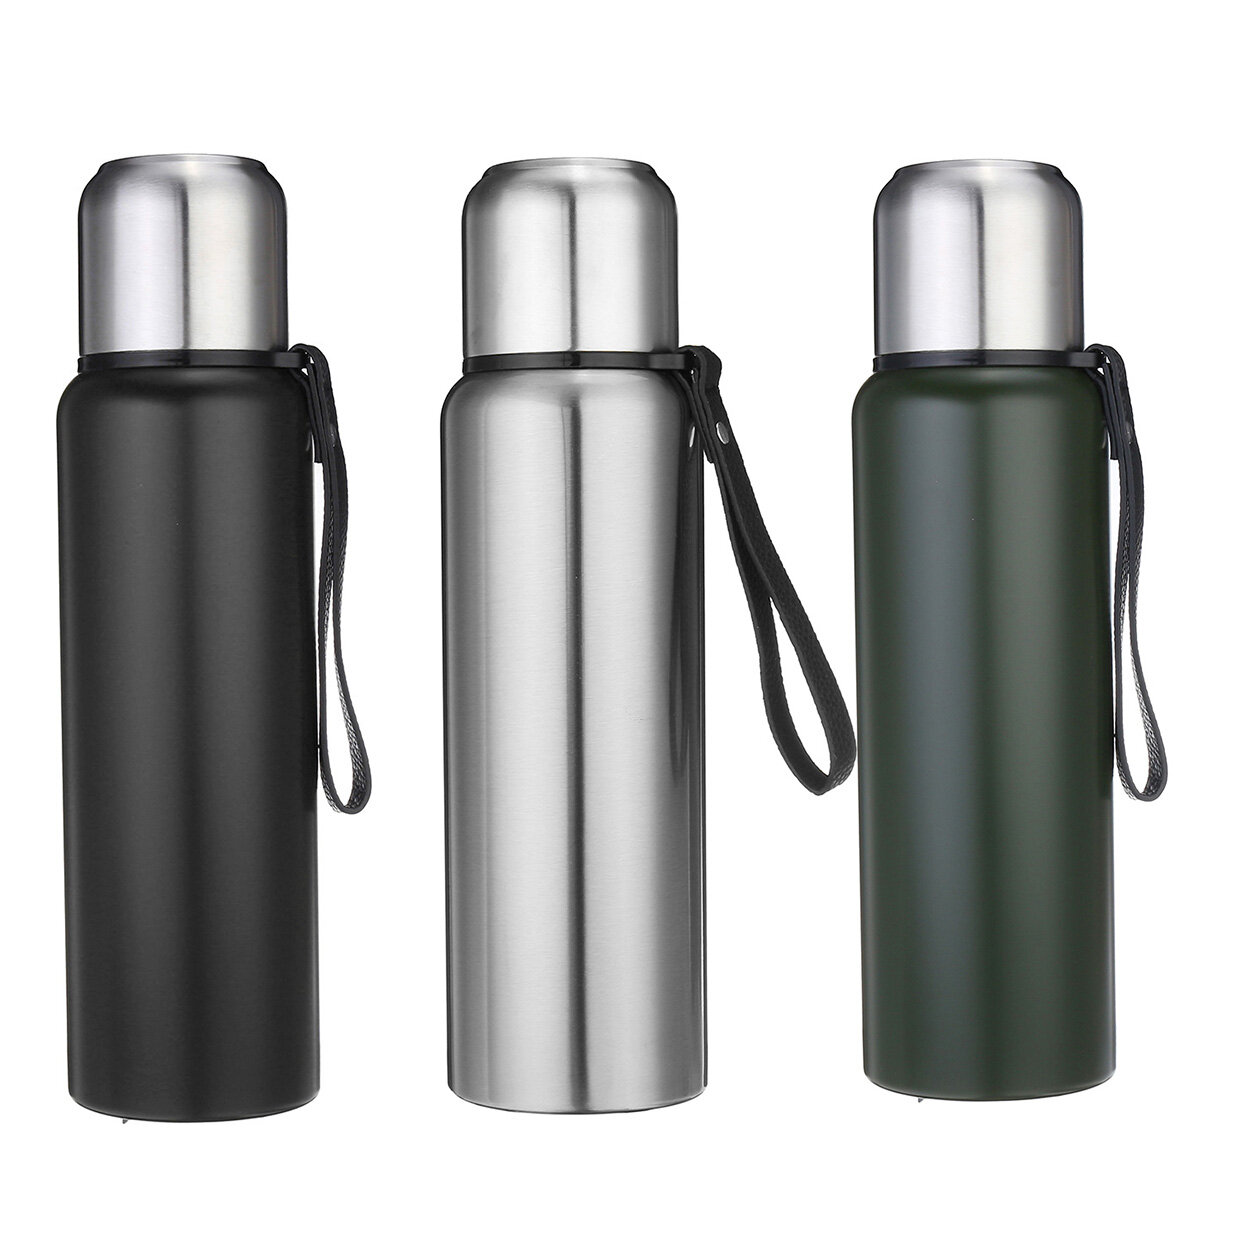 زجاجات ماء من الفولاذ المقاوم للصدأ مع عزل فراغي لرياضات الهواء الطلق من 800/1000/1500 مل.